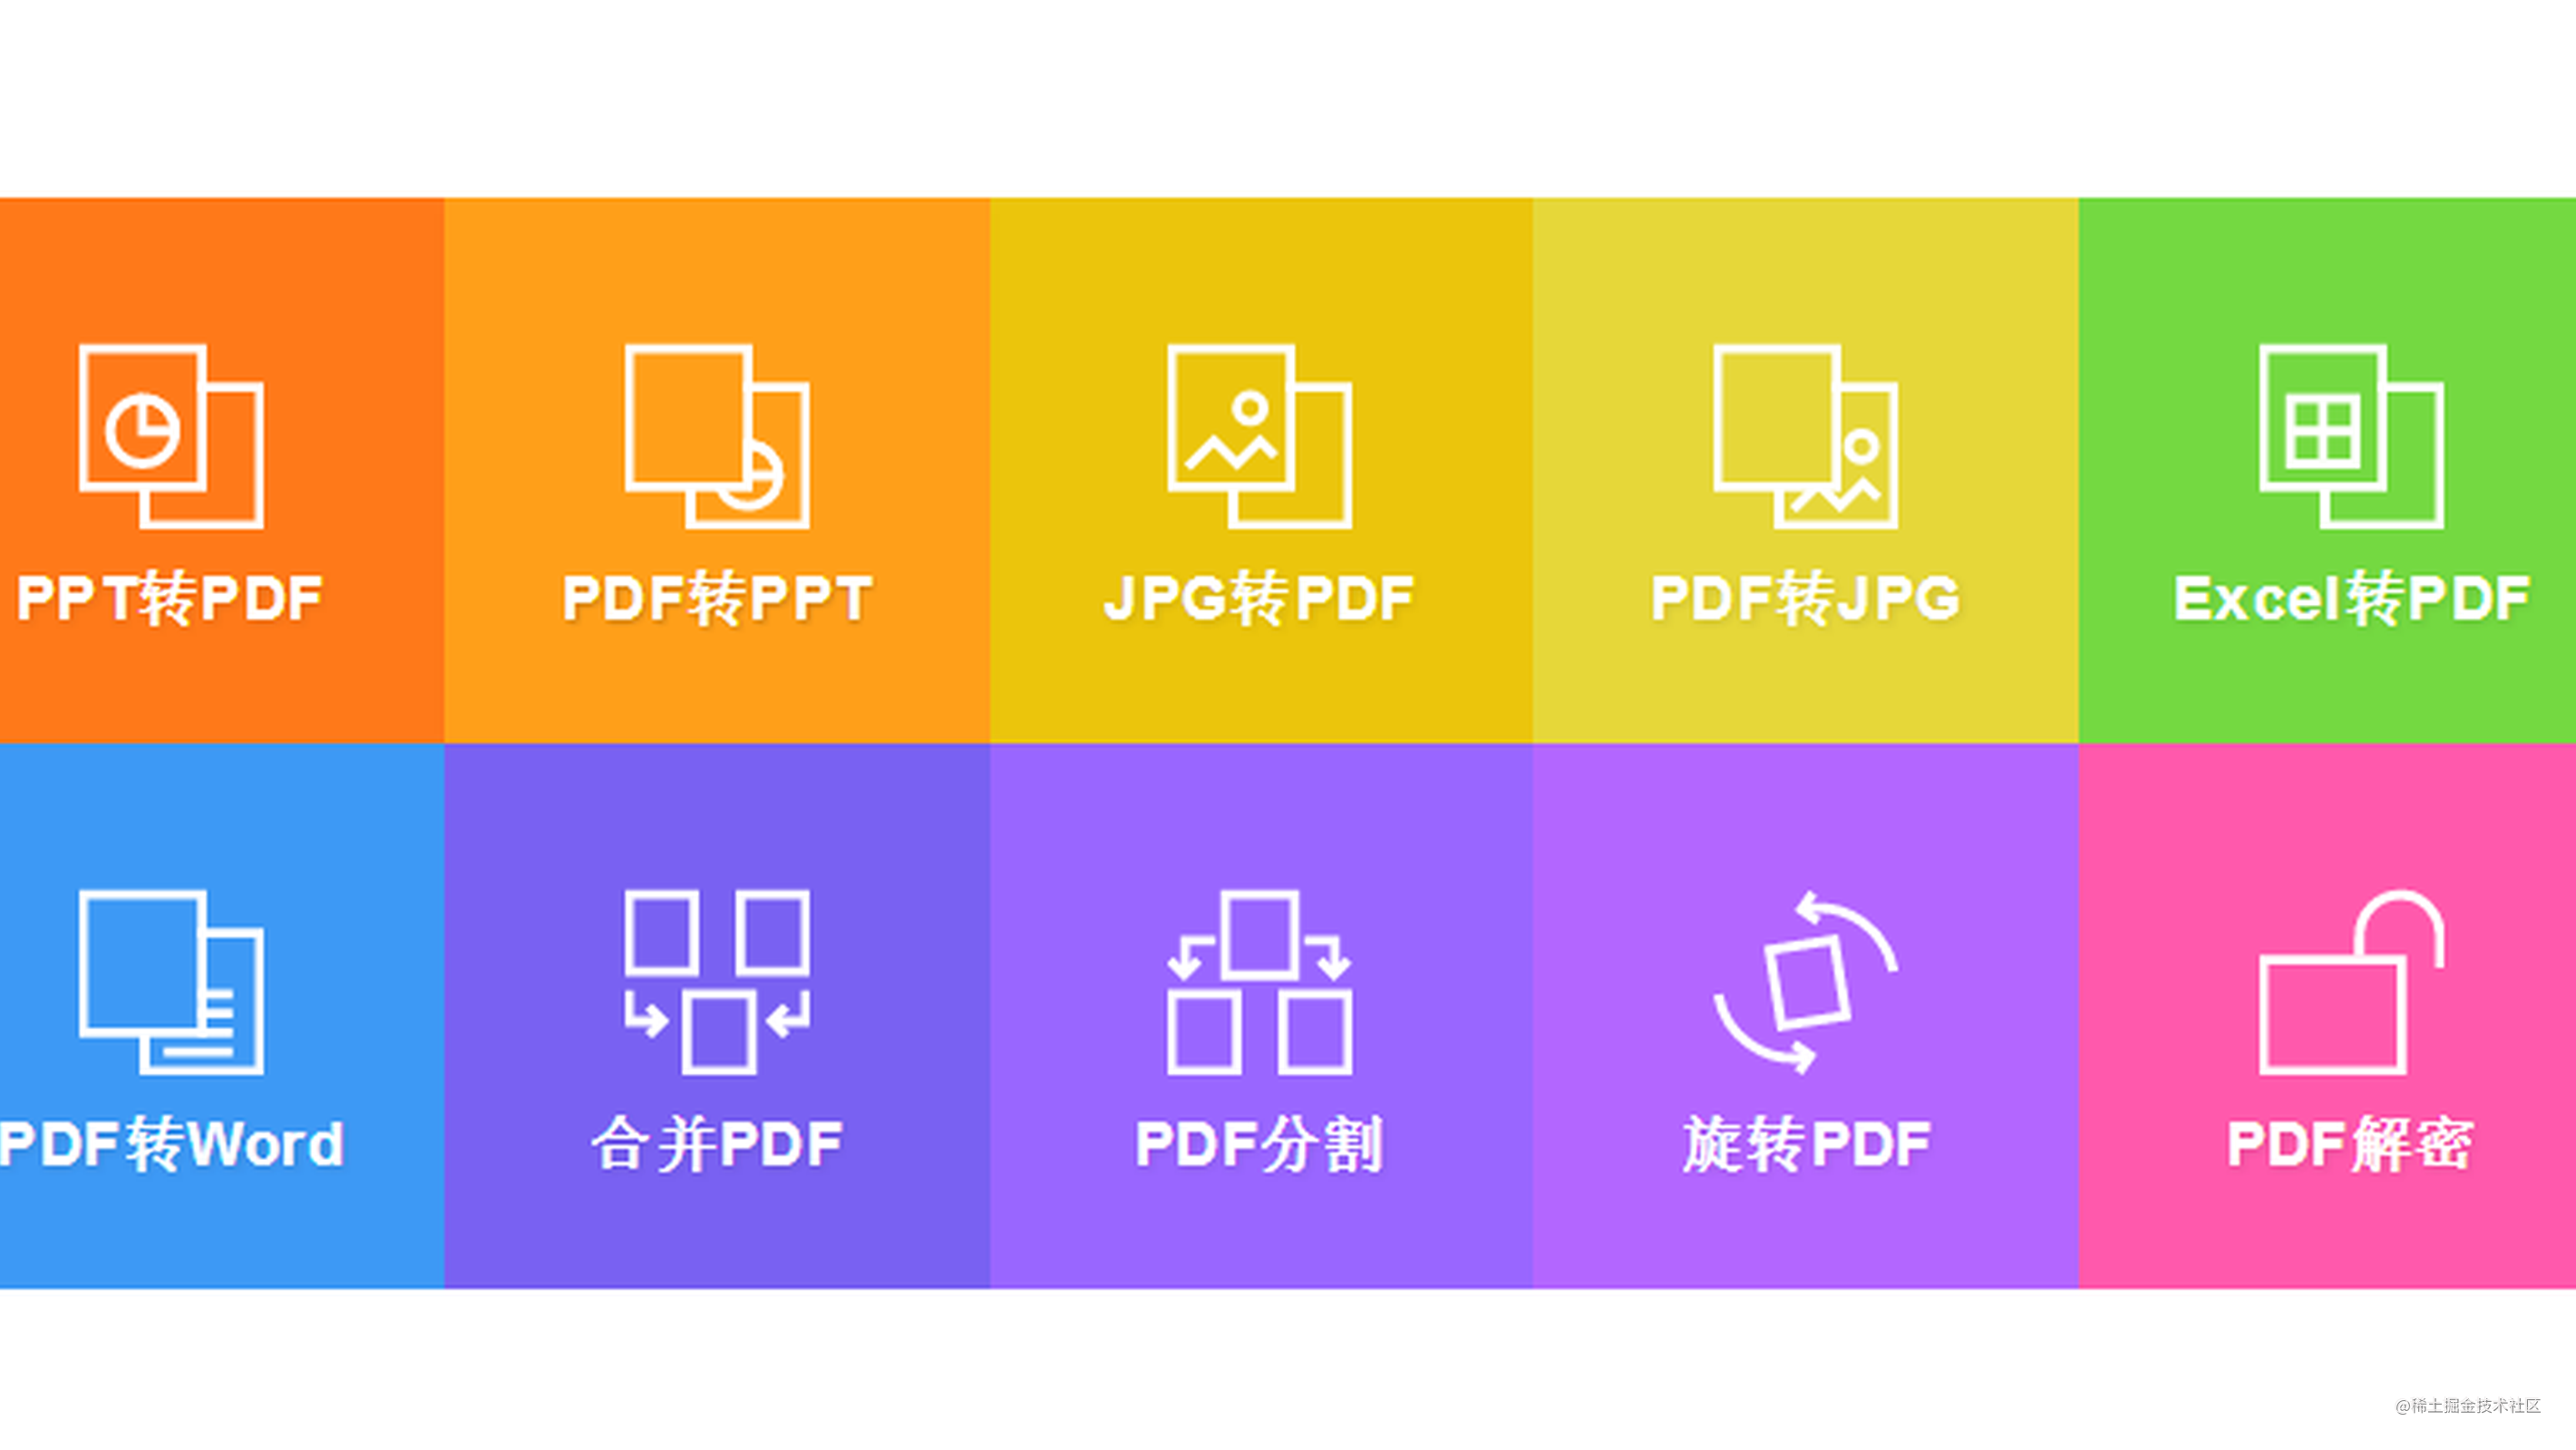 分享一个在线 PDF 文件各种互转的工具 - 值得收藏。